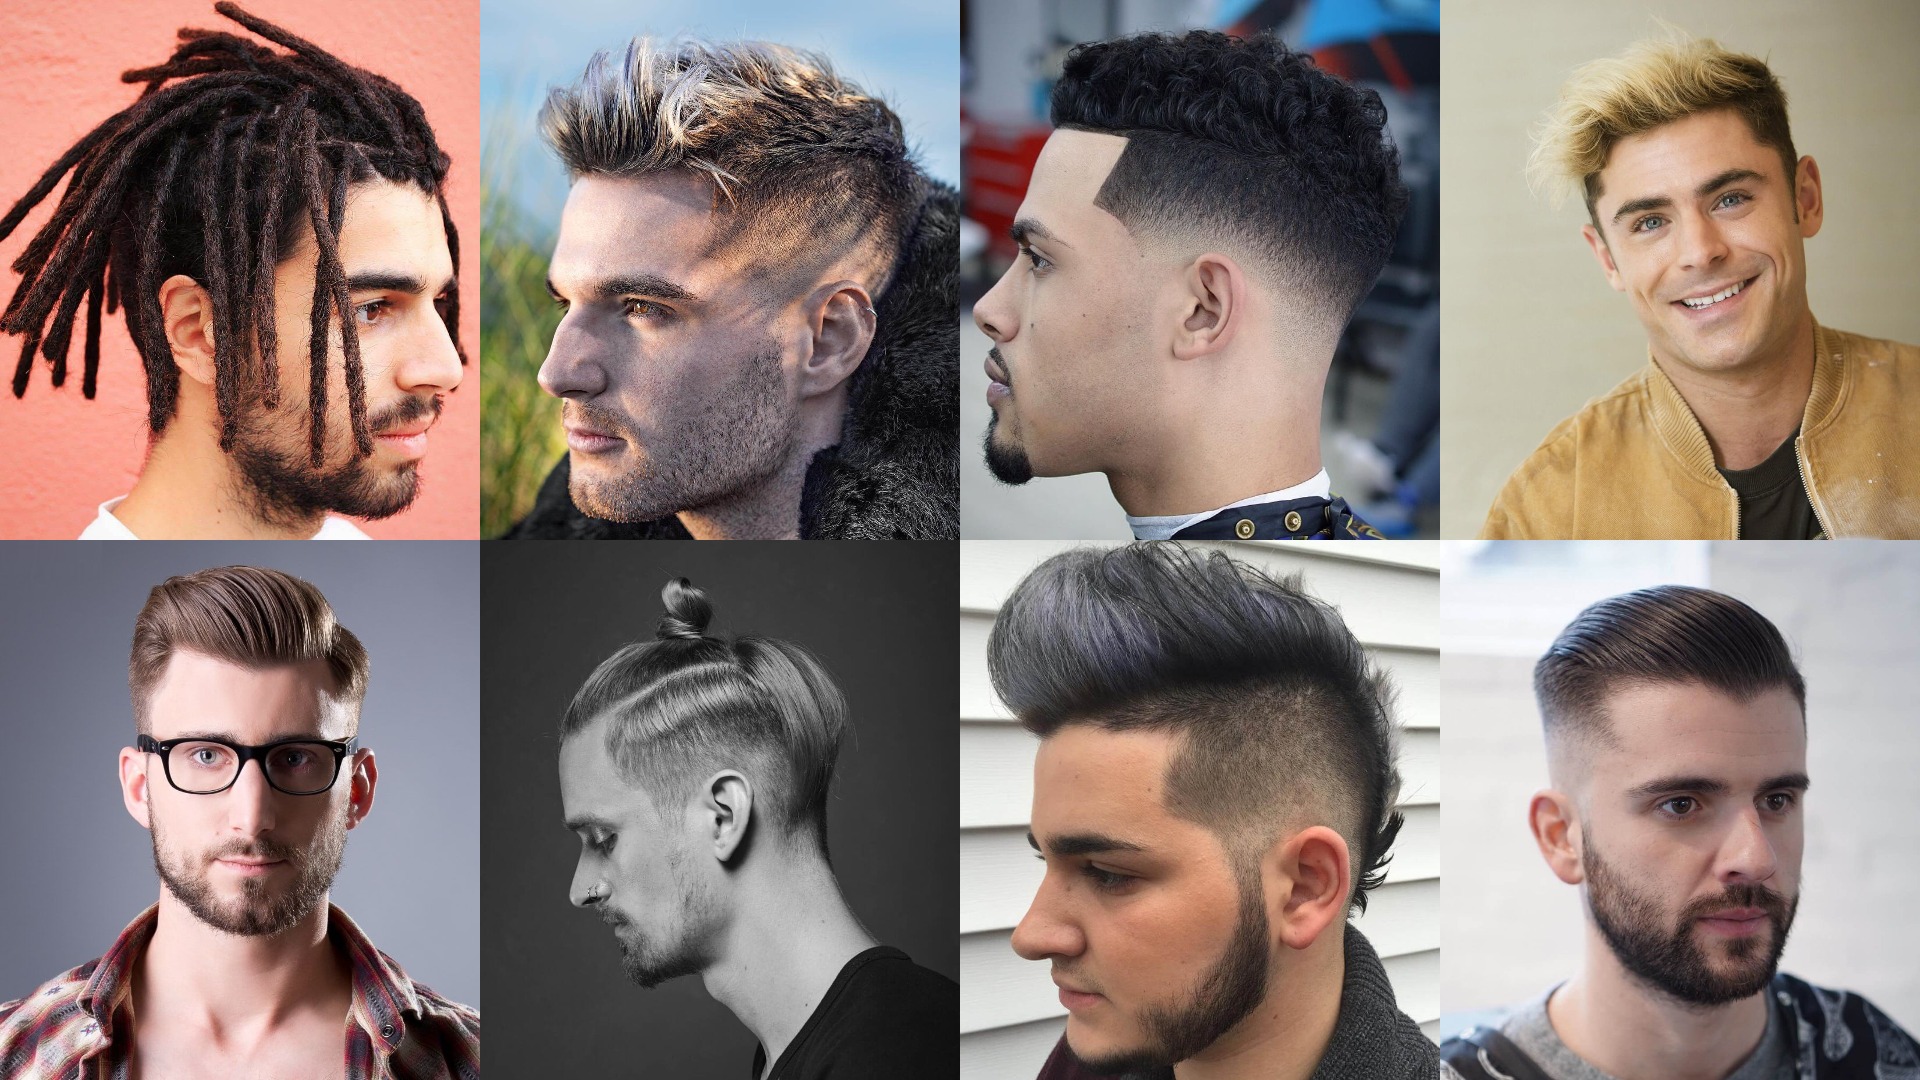 Men Hair Style Images - Free Download on Freepik